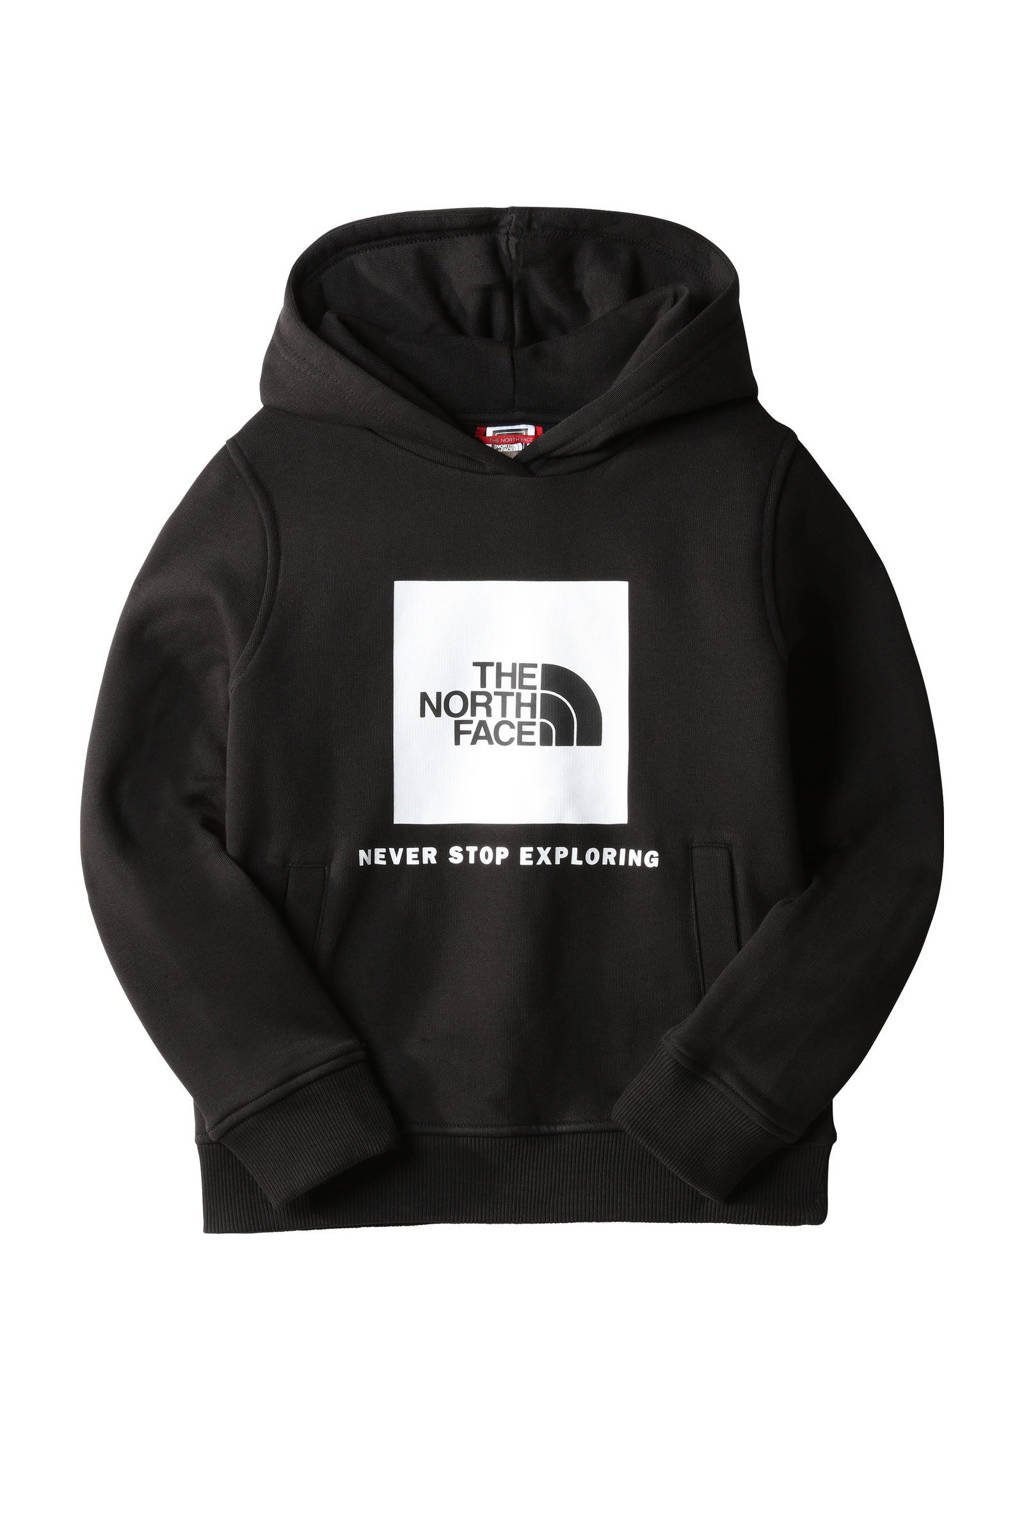 creatief Snelkoppelingen verstoring The North Face hoodie zwart kopen? | Morgen in huis | wehkamp